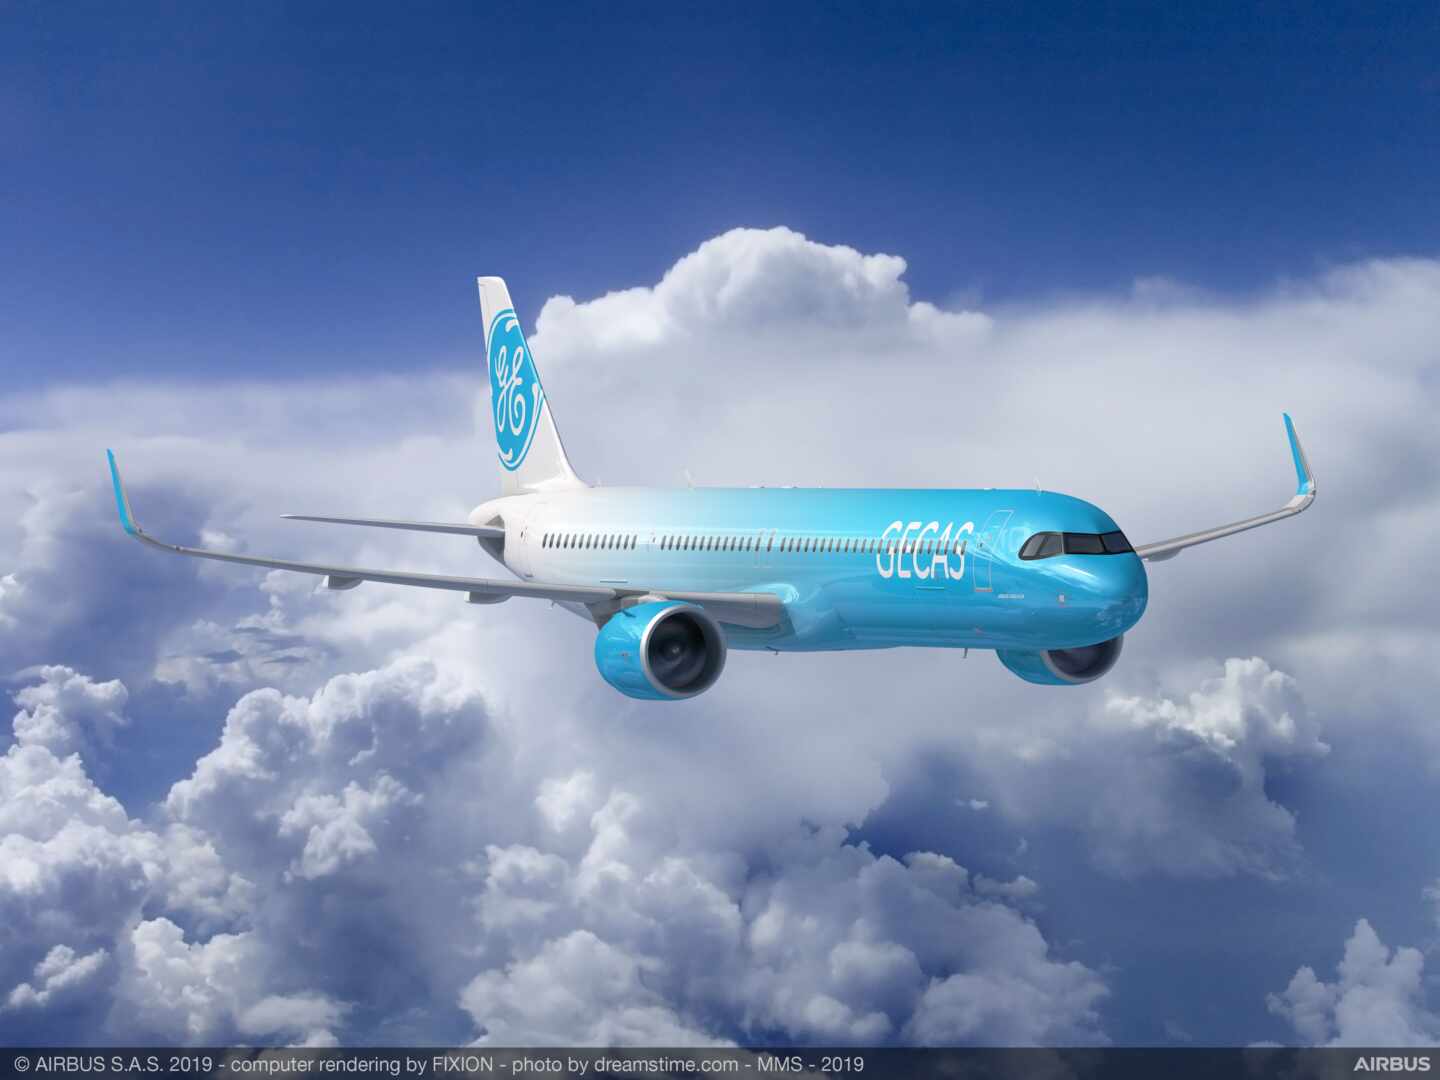 Airbus le gana a Boeing el pulso decisivo